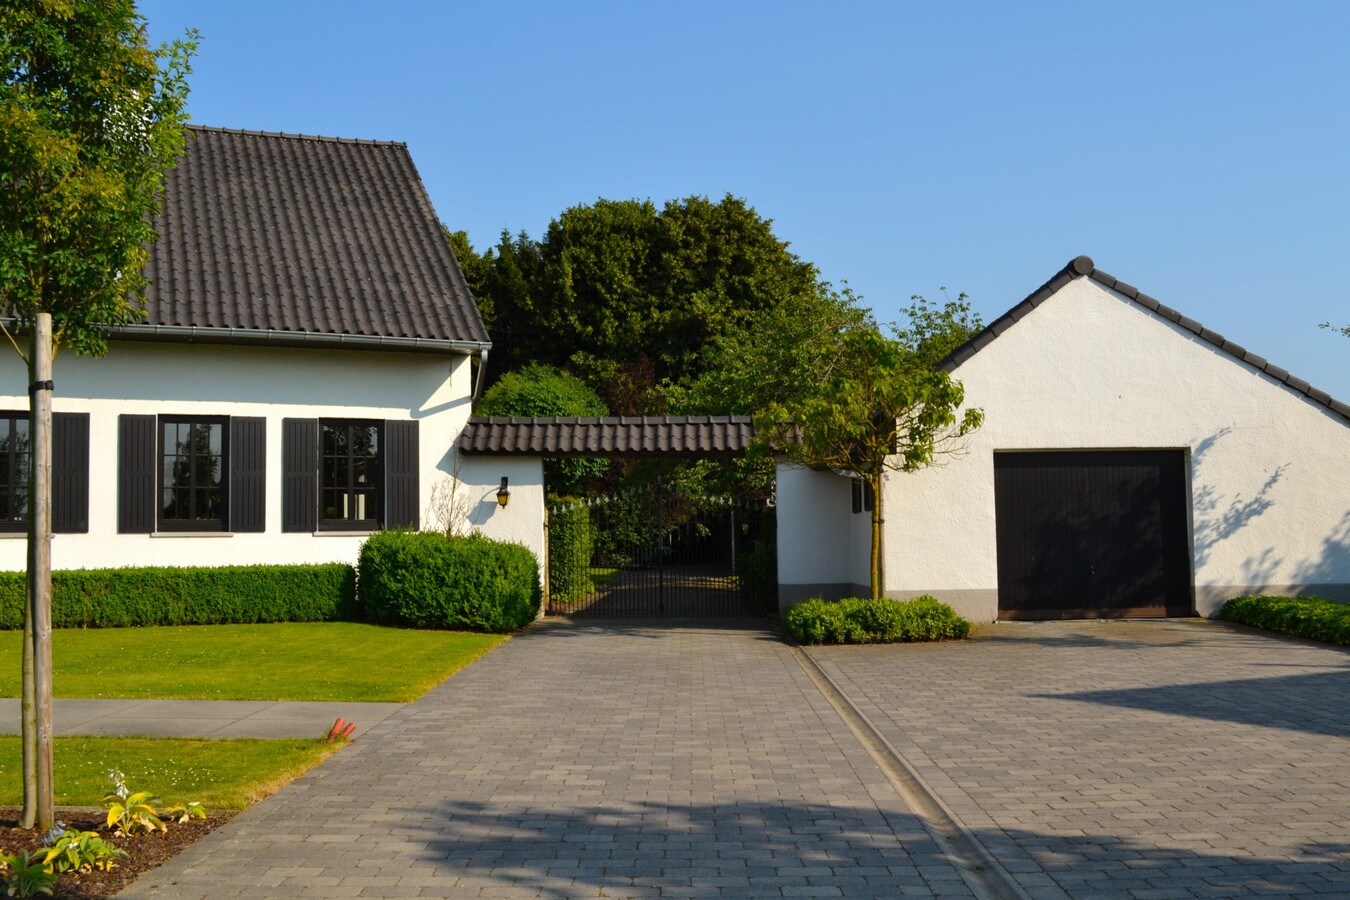 Property sold in Scherpenheuvel